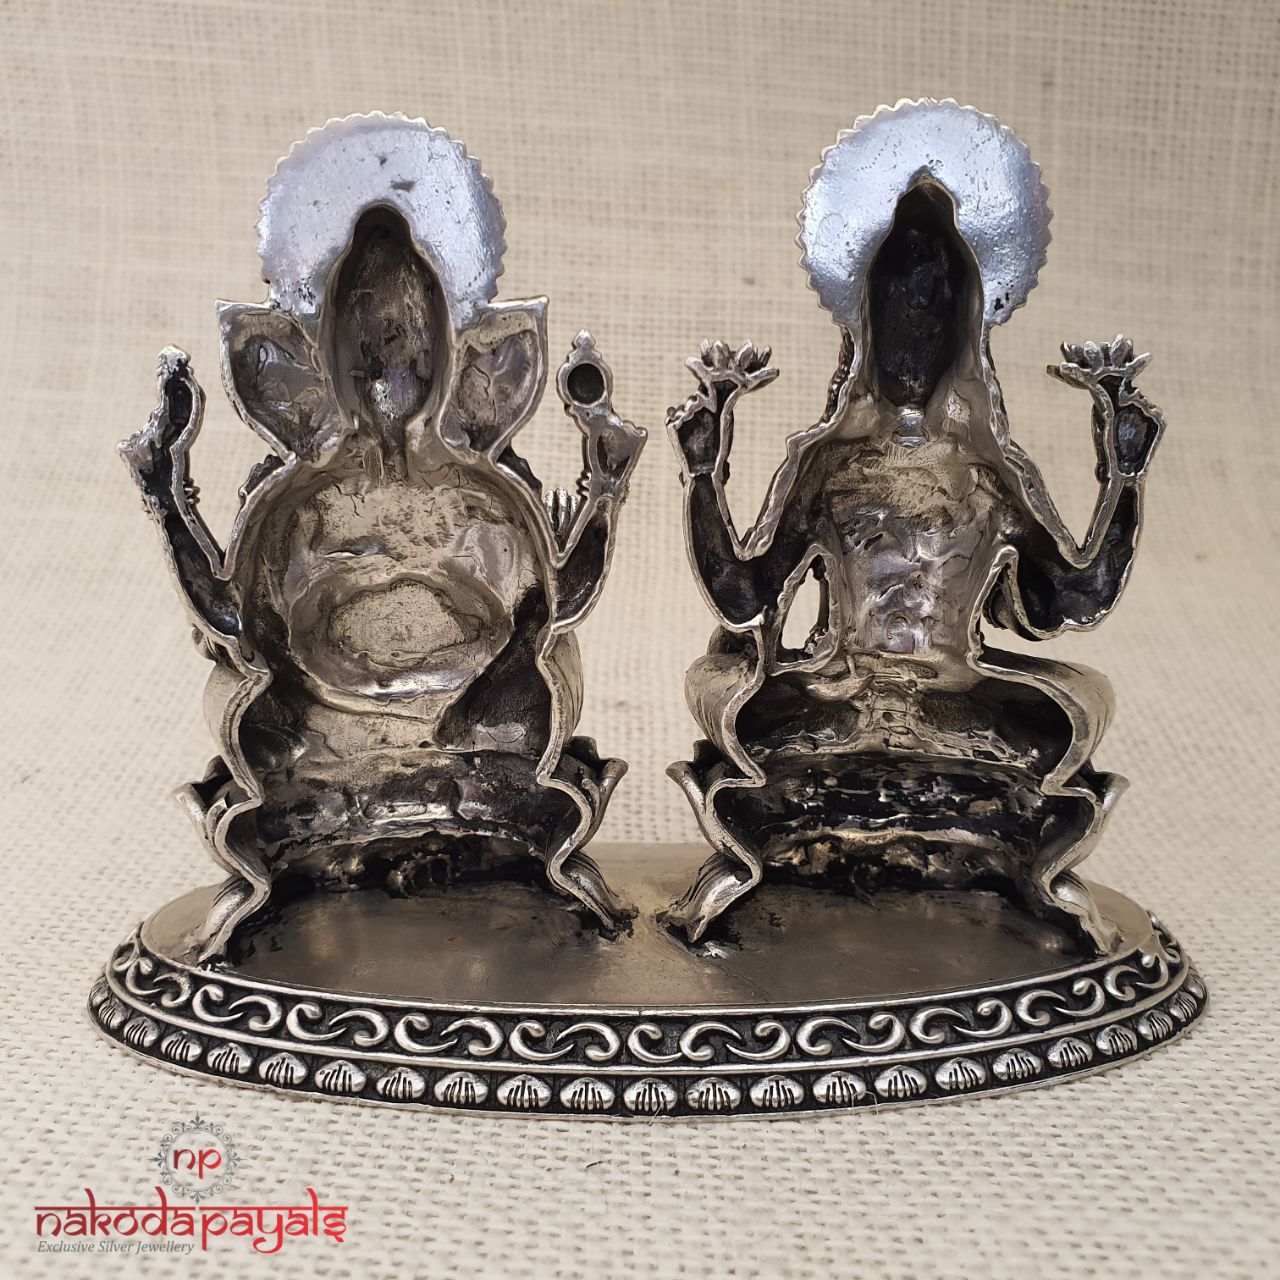 Lakshmi - Ganesha Idol